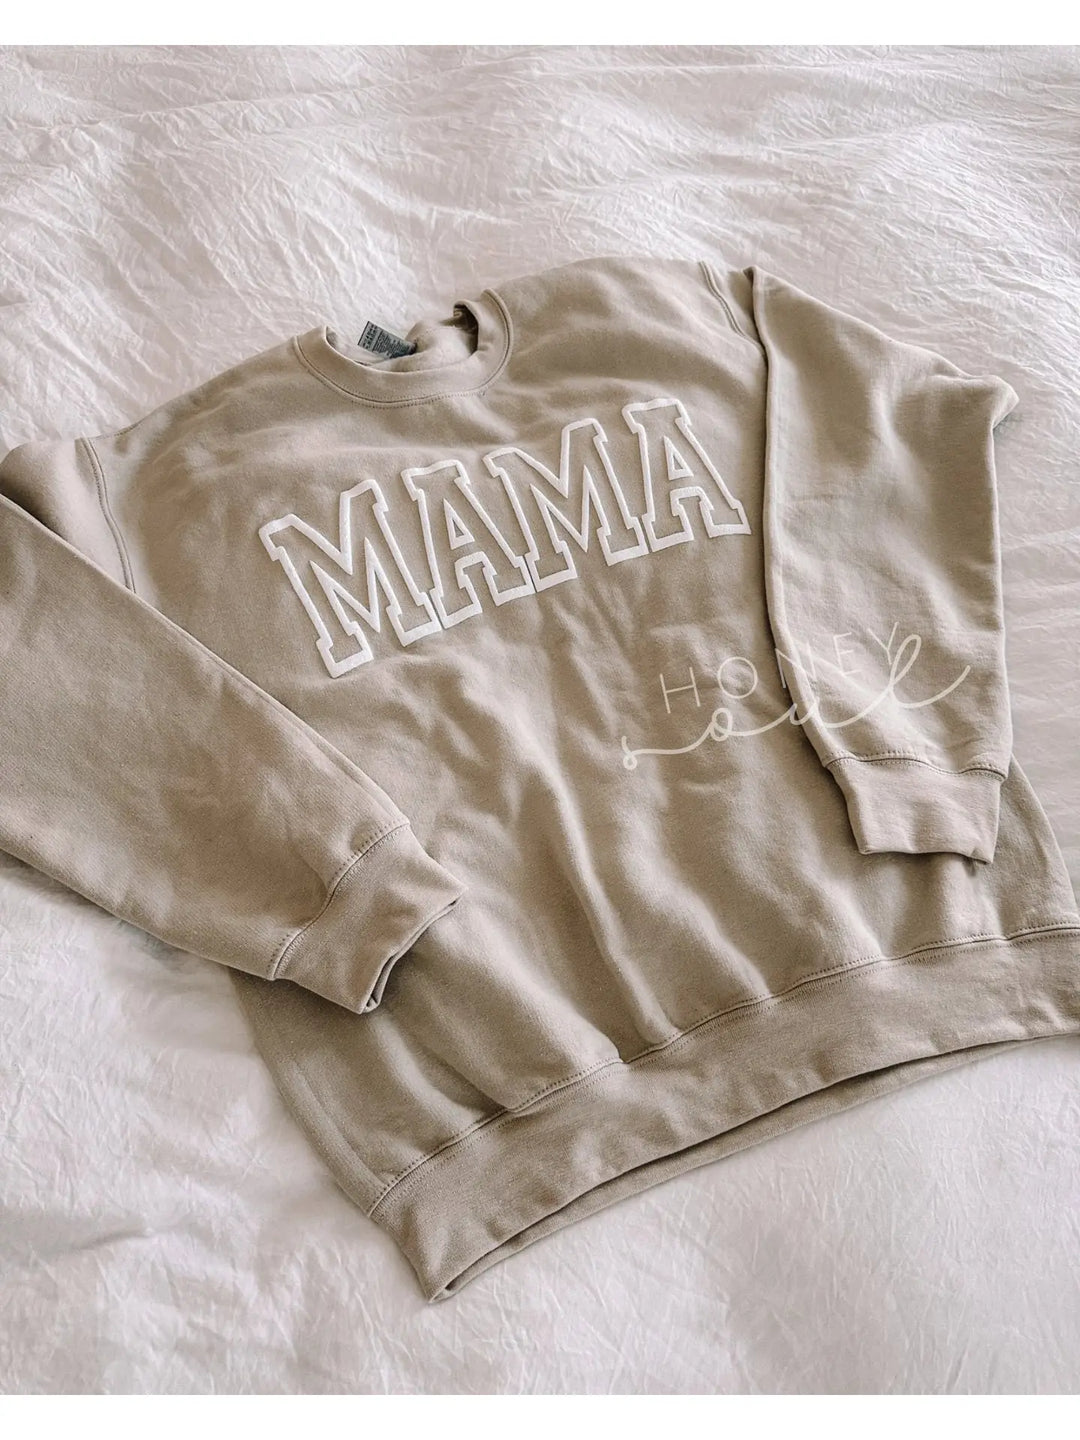 The MAMA Puff Sweatshirts